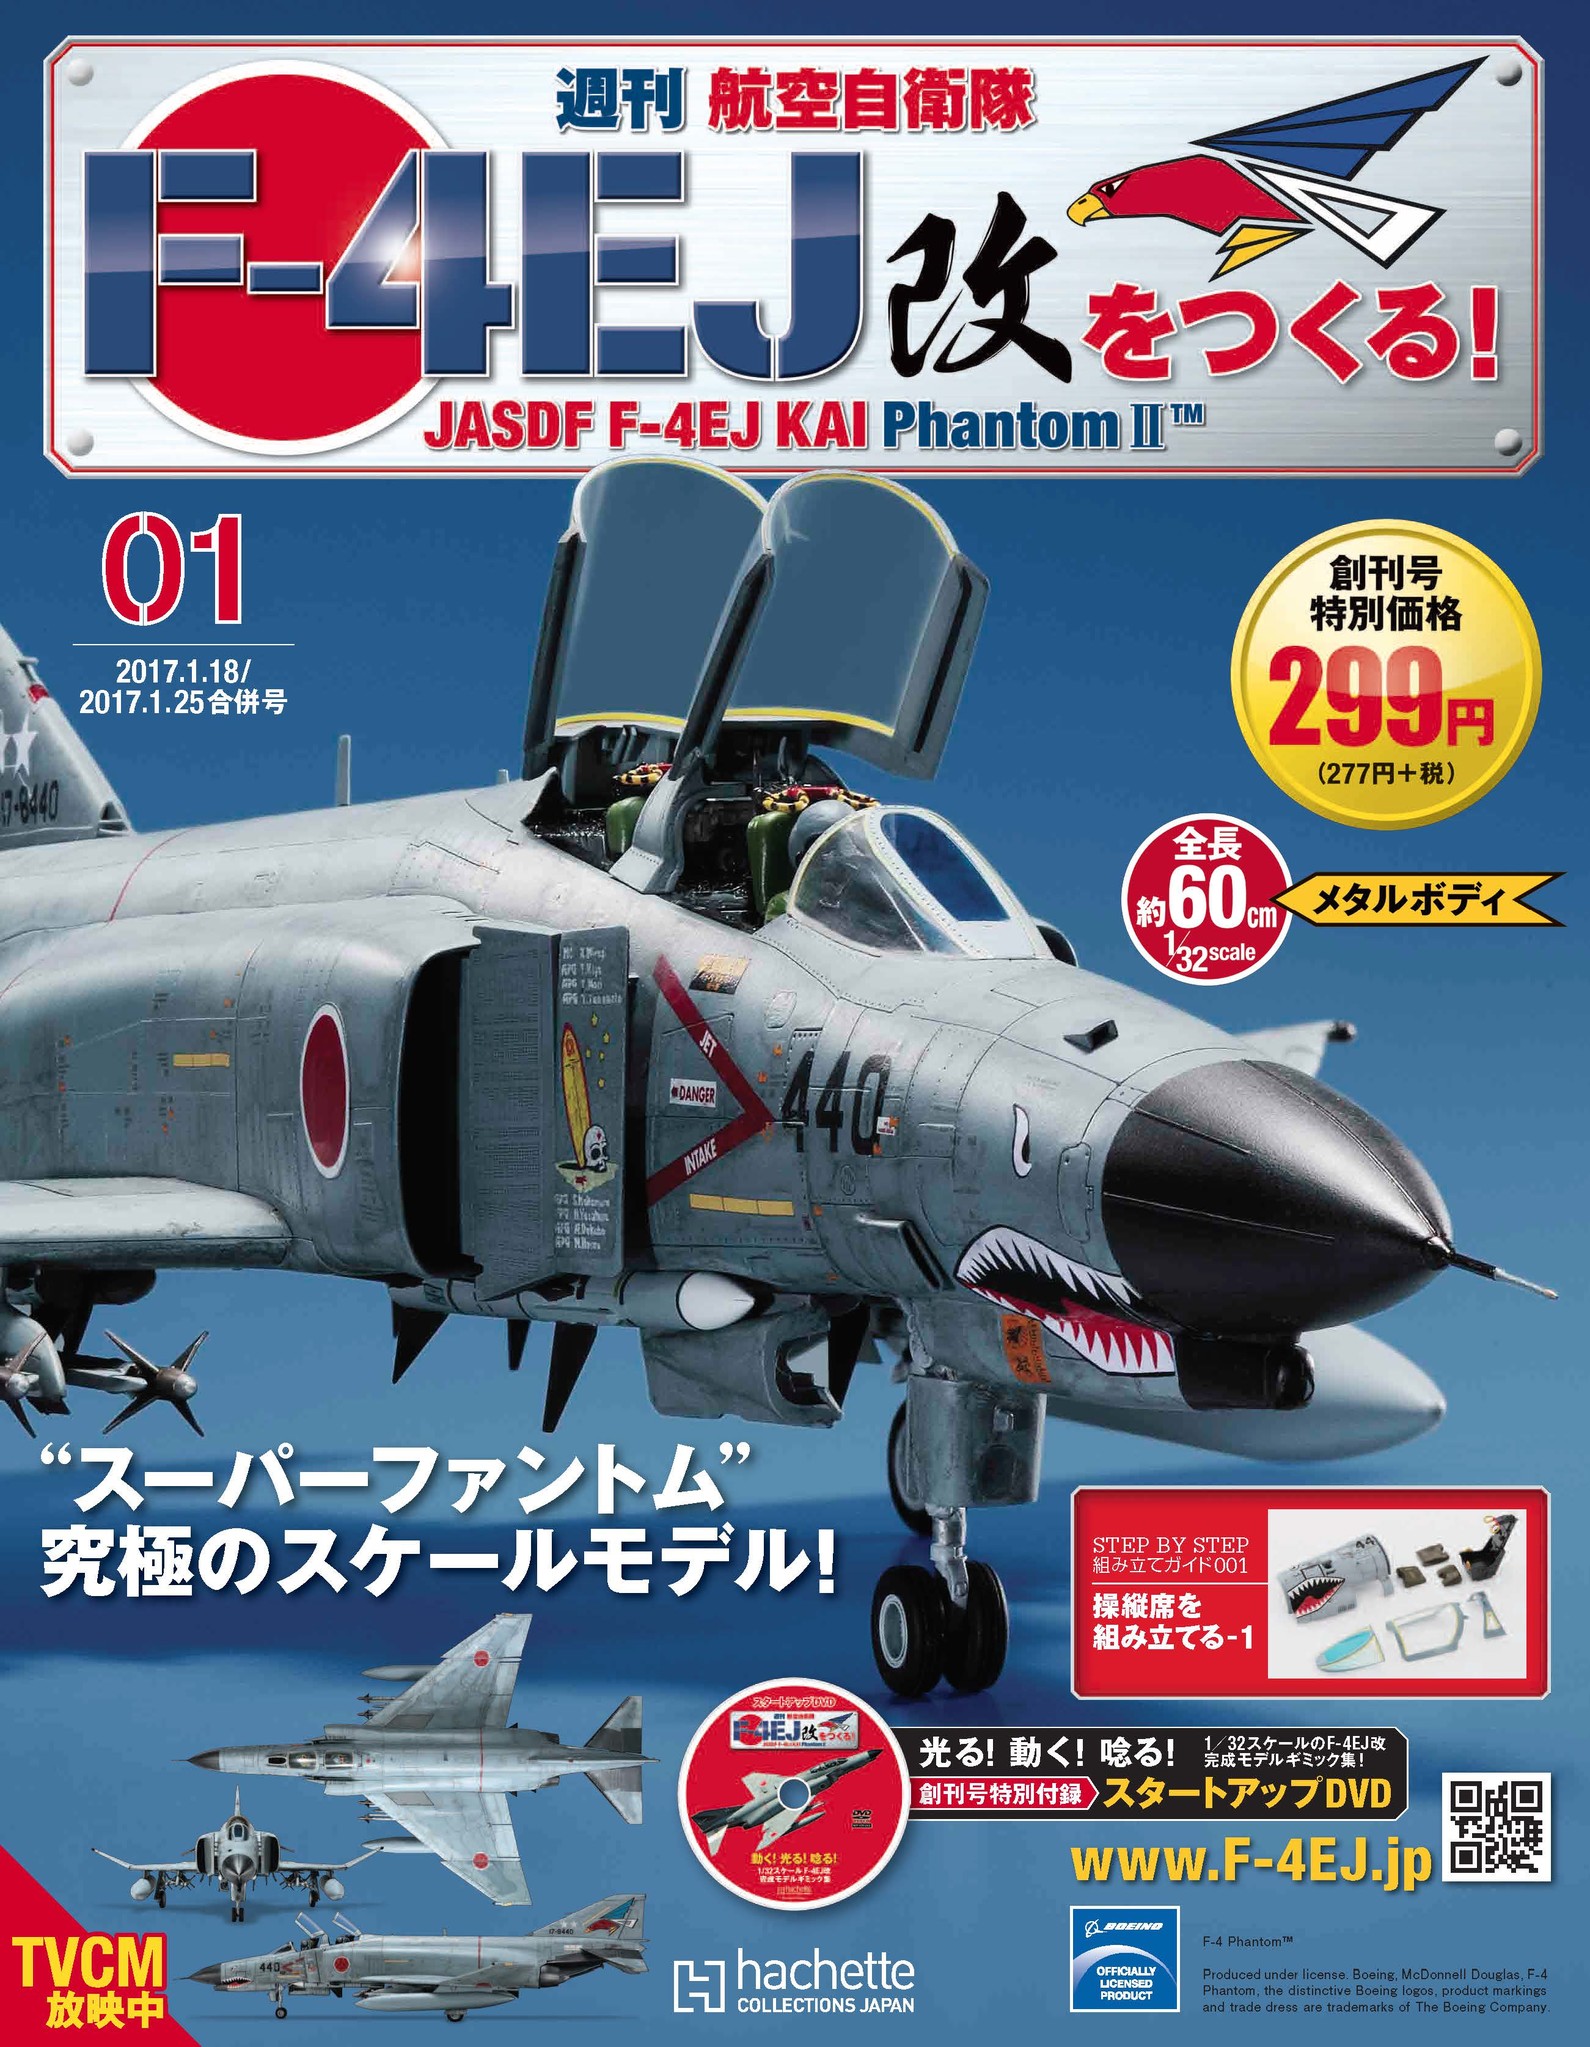 週刊 航空自衛隊 F-4EJ改をつくる!』先行予約販売開始｜アシェット・コレクションズ・ジャパン株式会社のプレスリリース